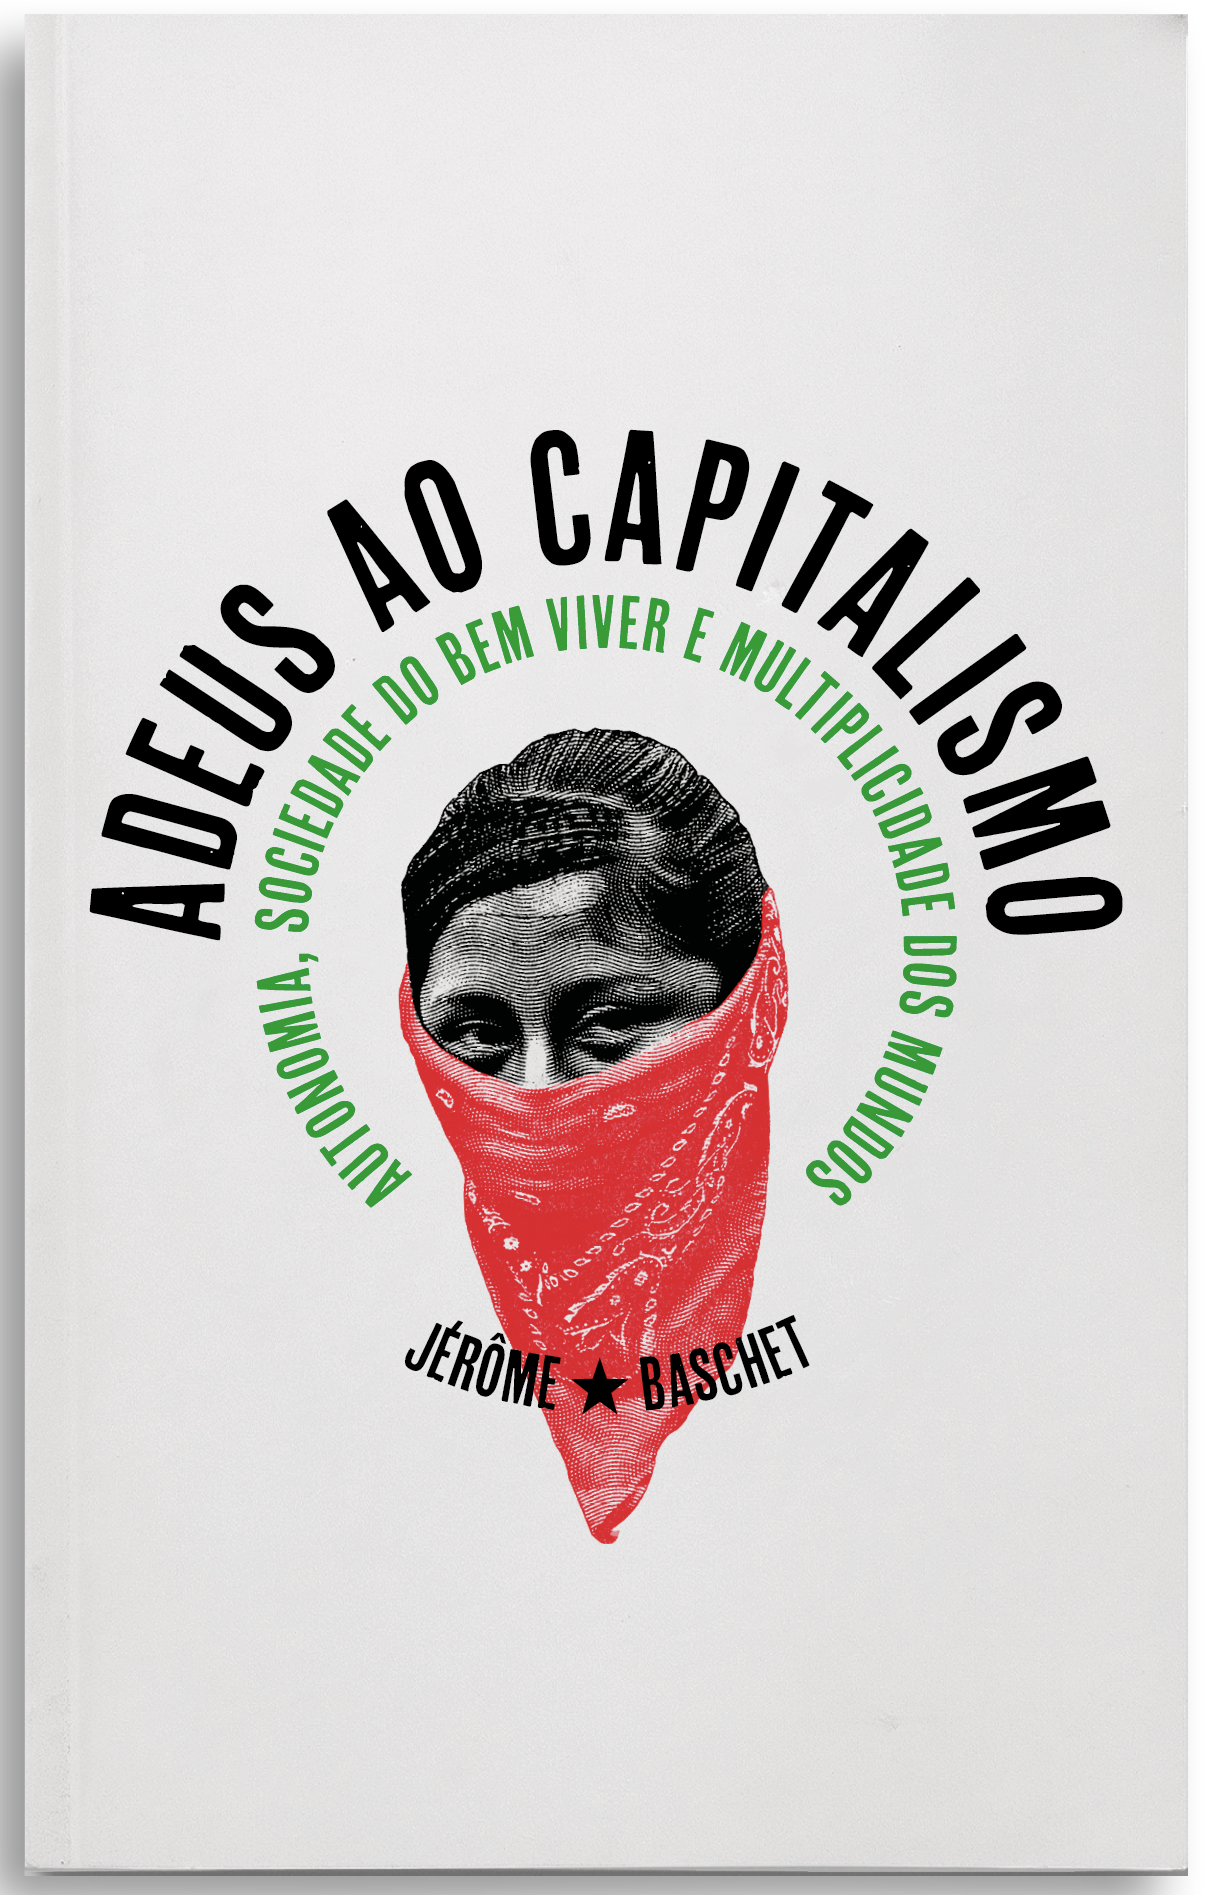 Adeus ao capitalismo. Autonomia, sociedade do bem viver e multiplicidade dos mundos, livro de Jérôme Baschet